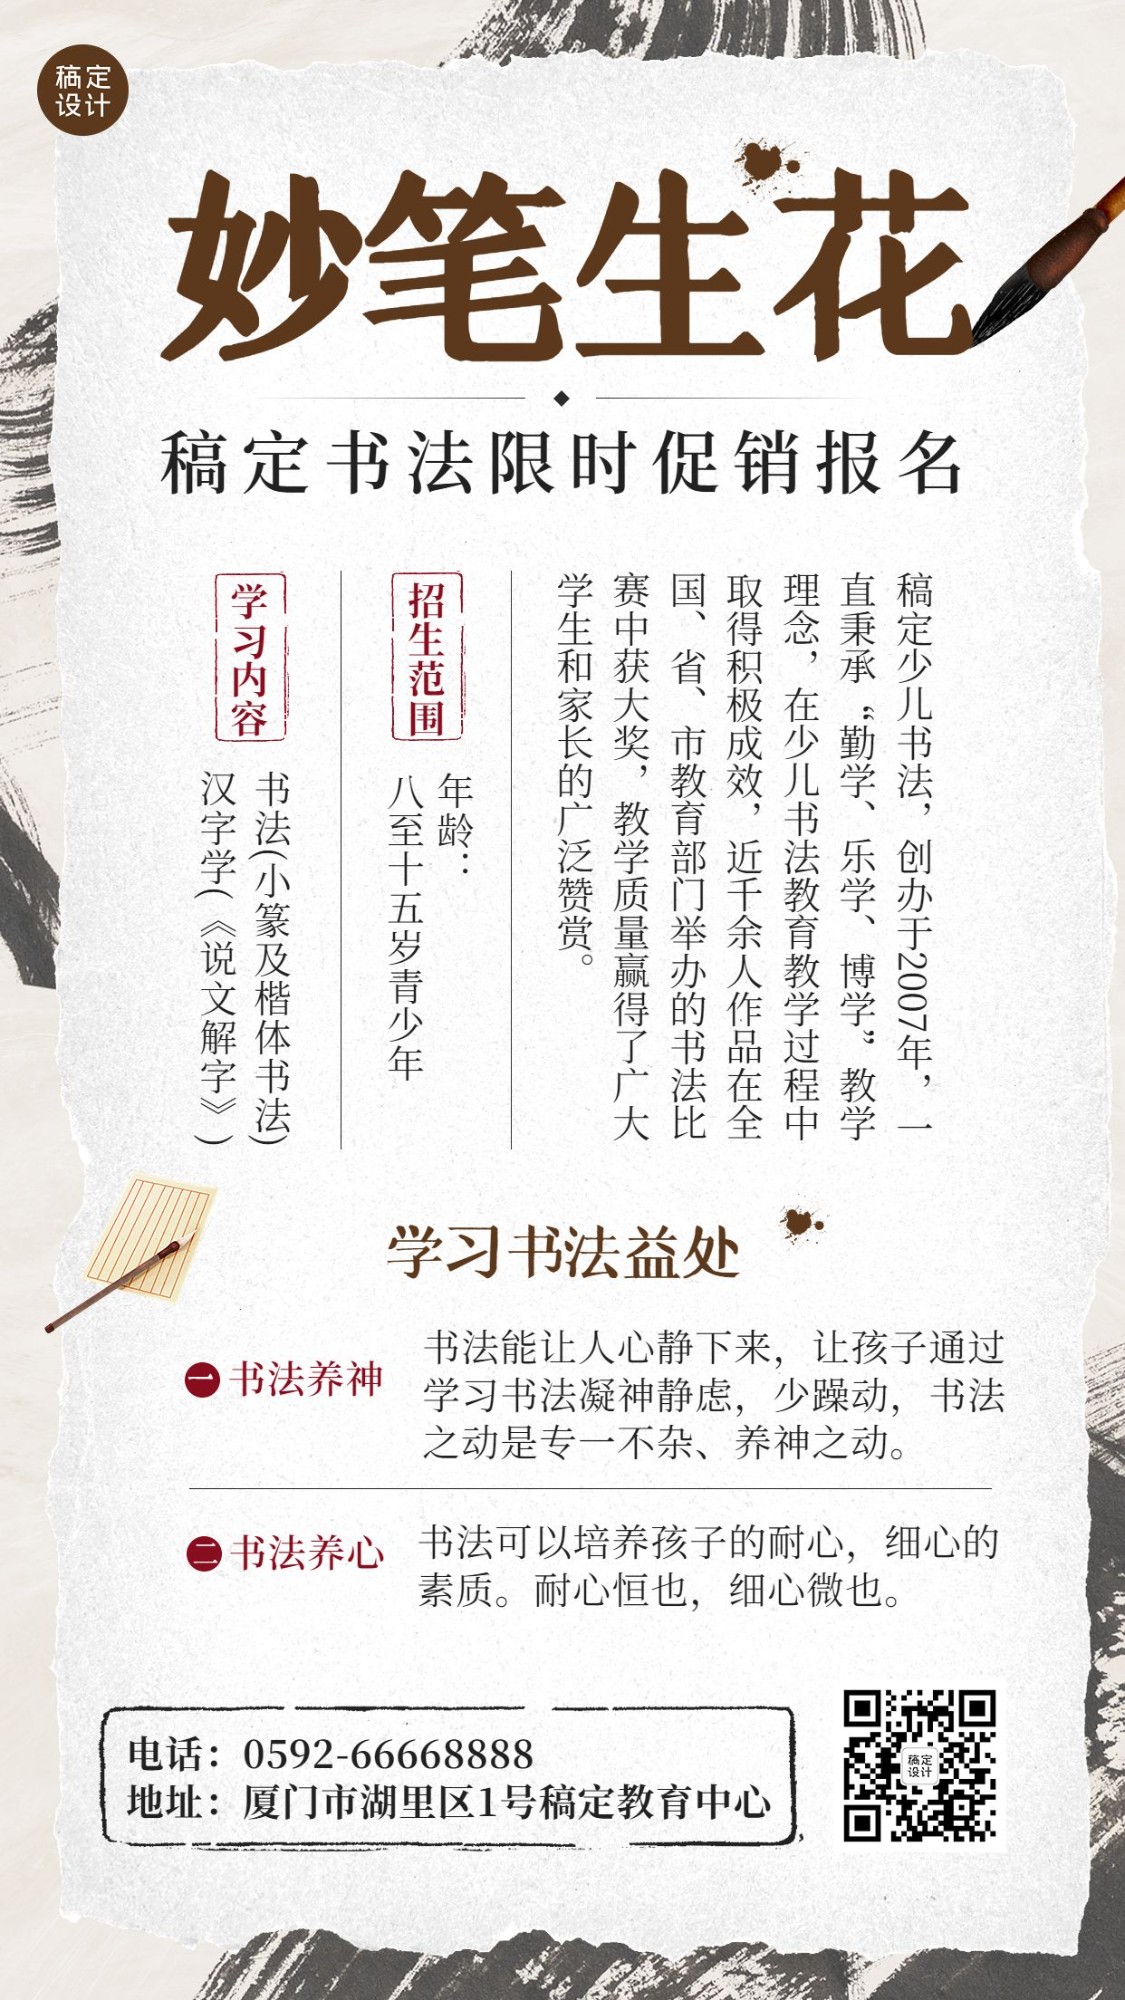 少儿书法课程招生宣传中国风手机海报